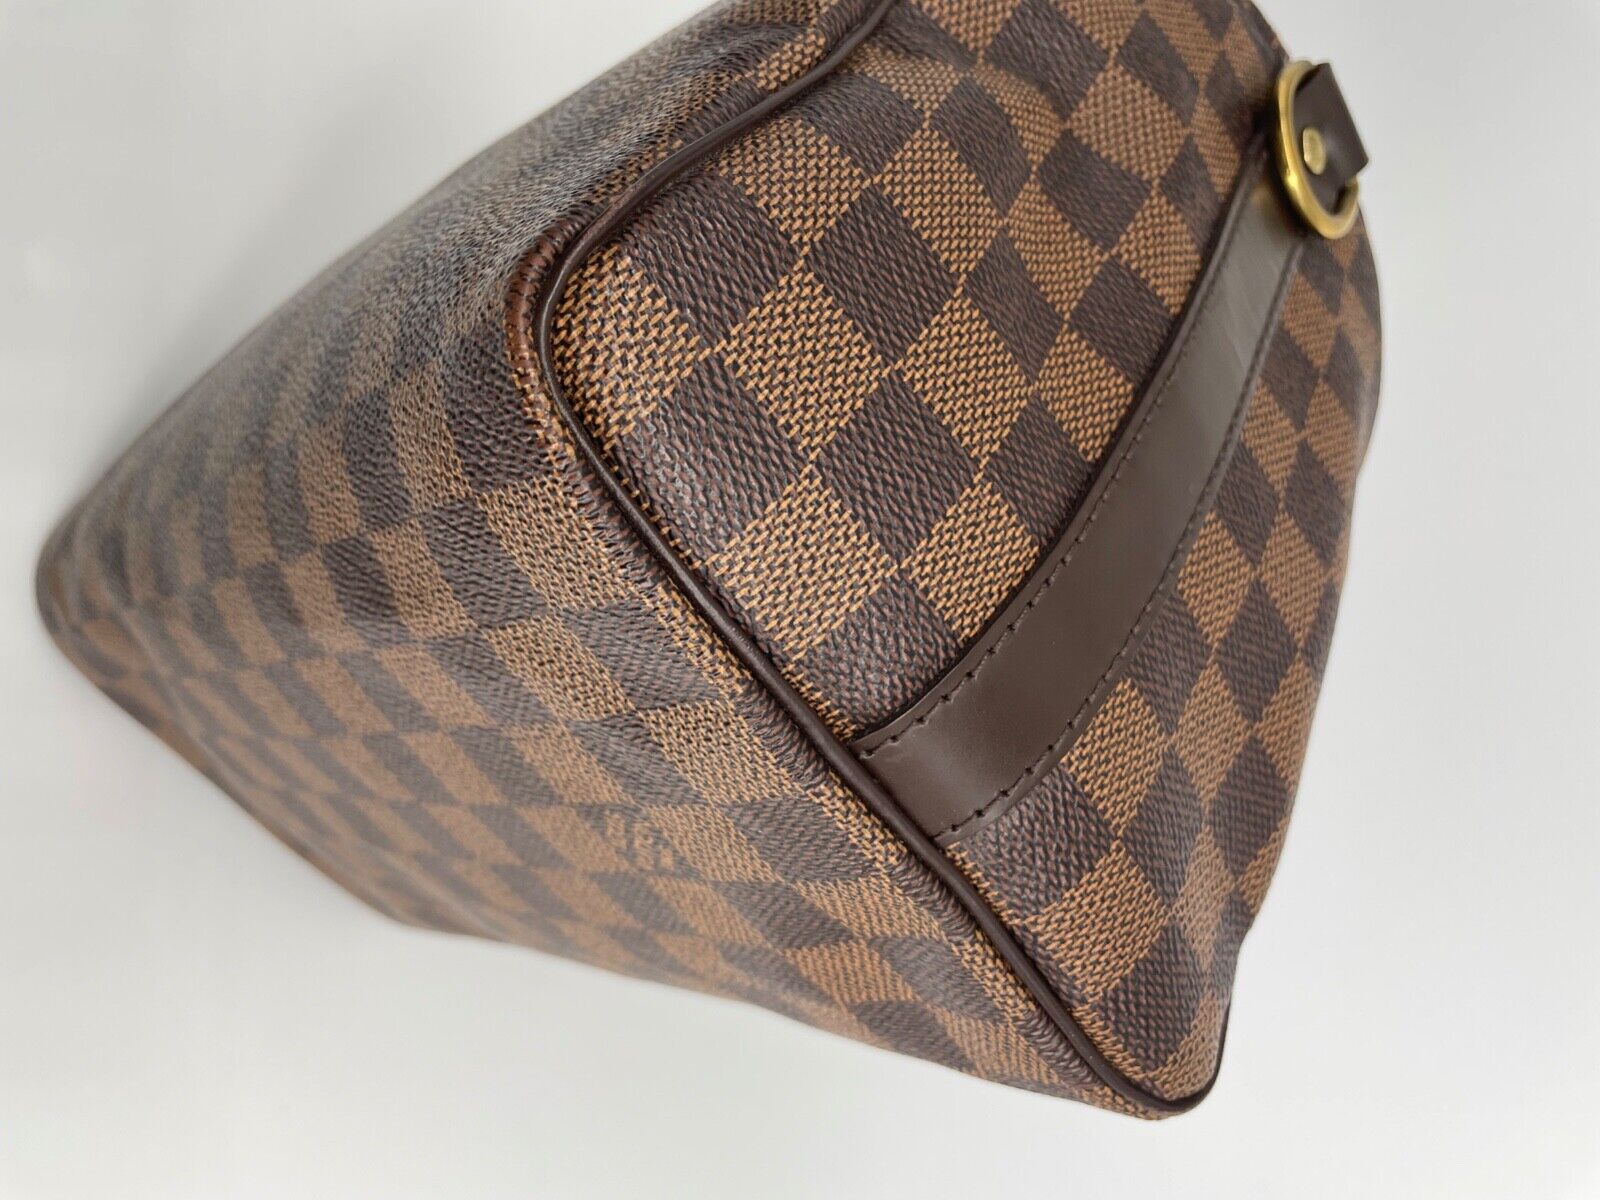 I love this bag!! Louis Vuitton Speedy Bandouliere 25 in Damier Ebene   Louie vuitton, Louis vuitton handbags, Louis vuitton speedy bandouliere